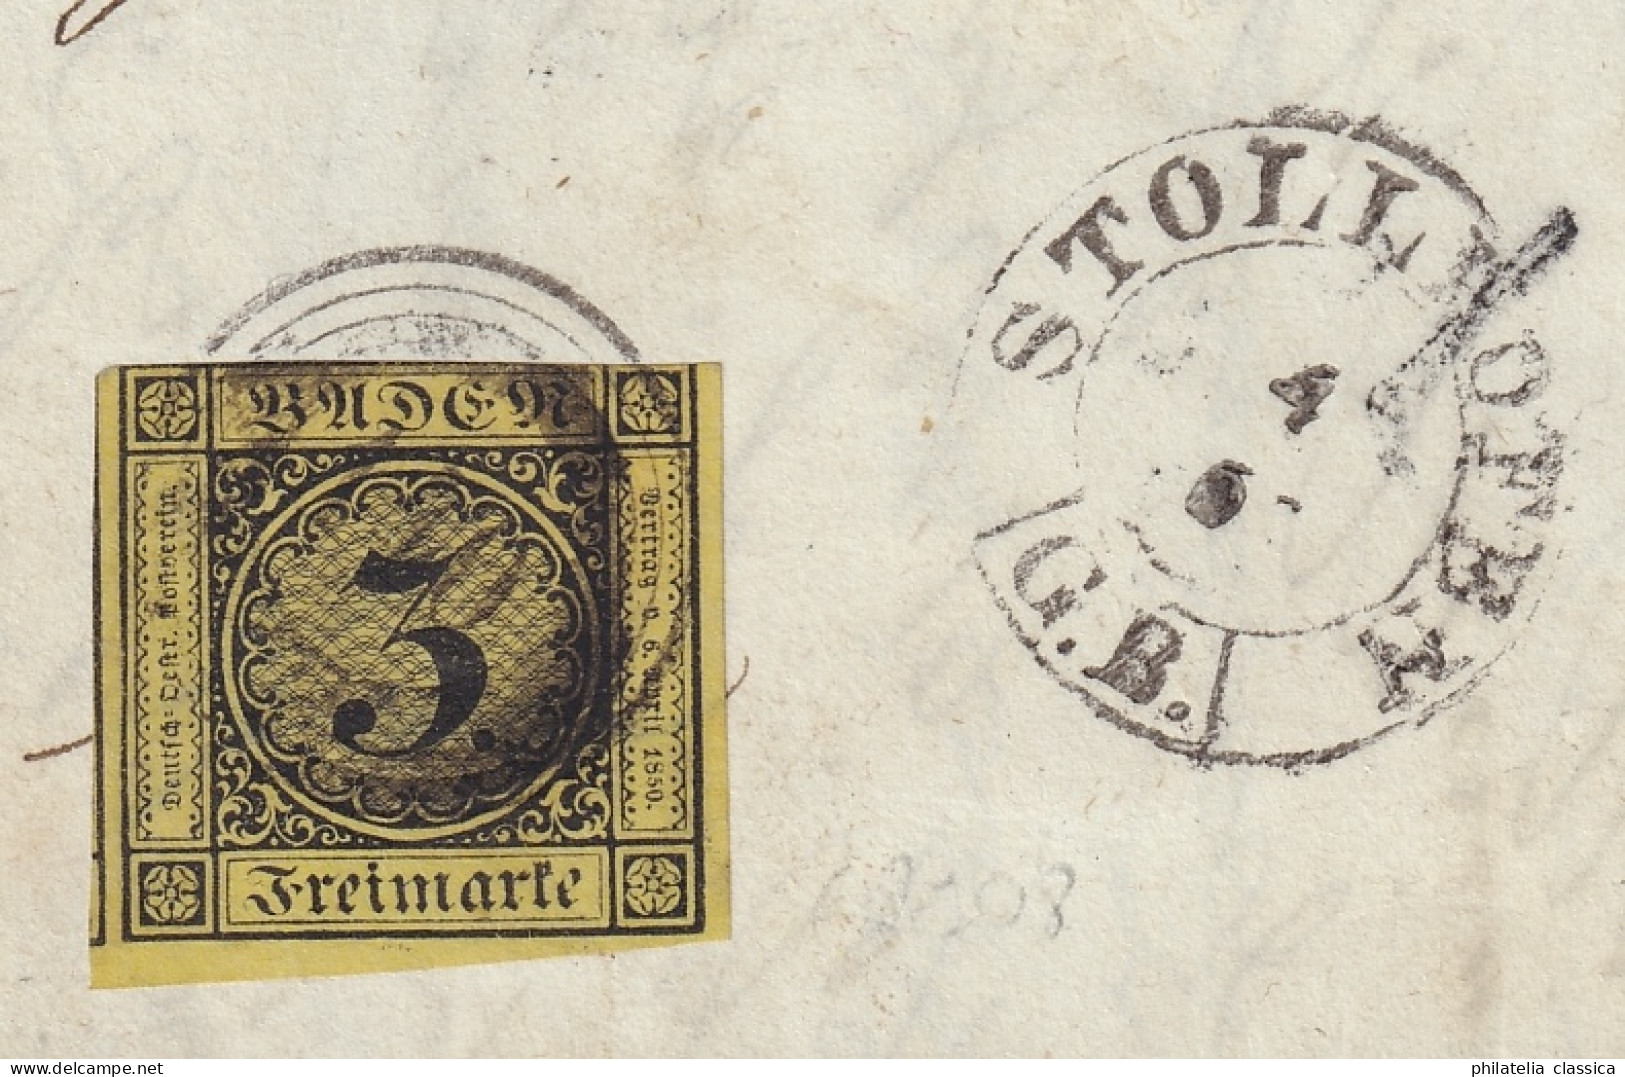 BADEN Nummernstempel 140 STOLLHOFEN auf sauberem Brief (Feuser + 1200,-), 720,-€